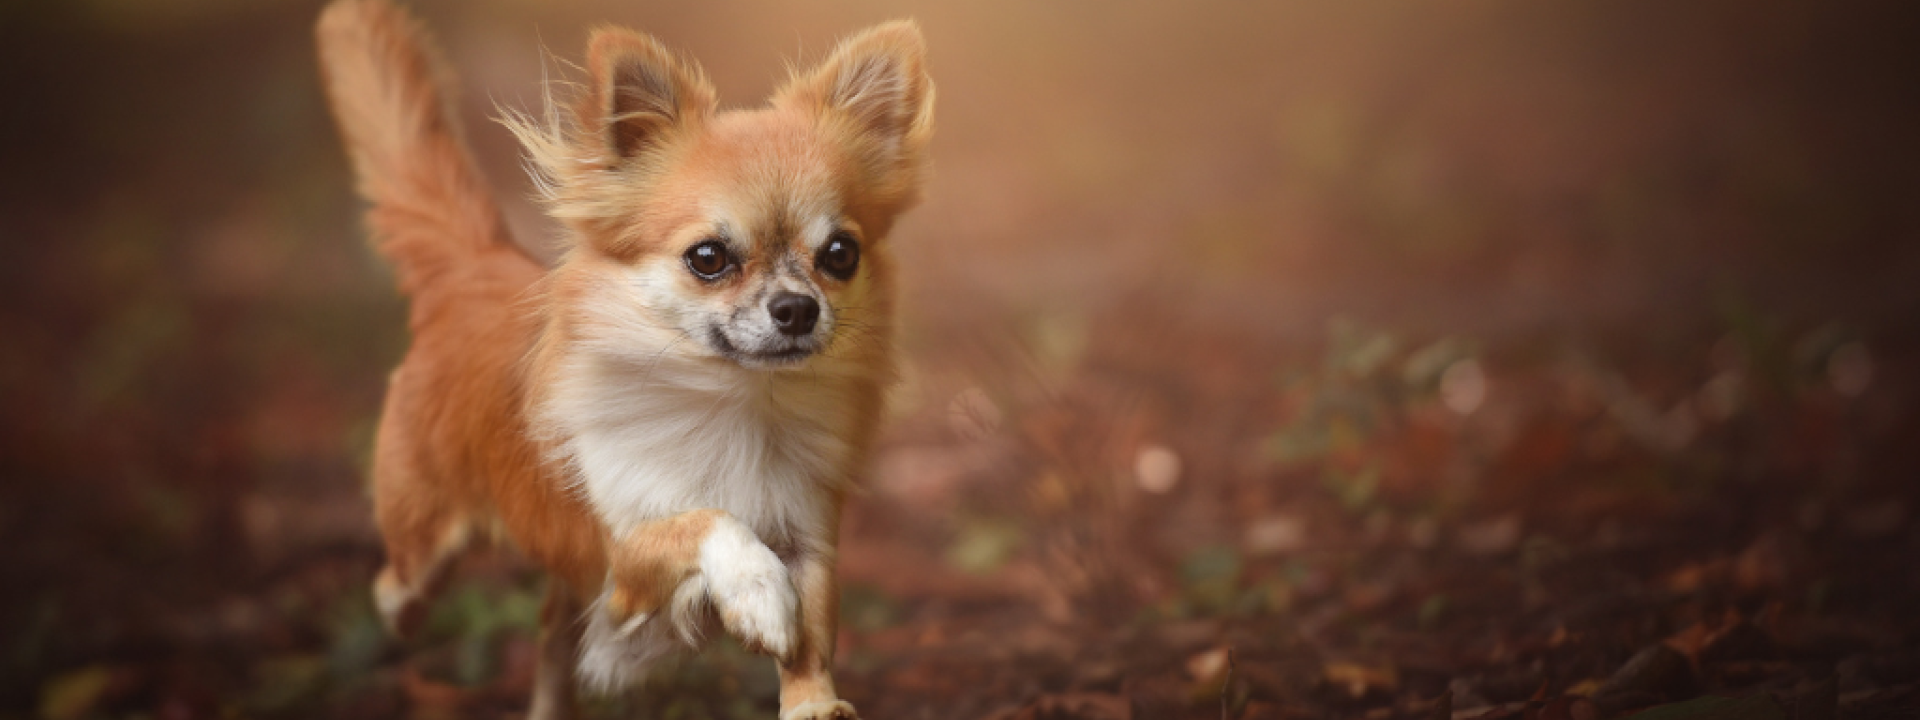 Chihuahua running on ground.